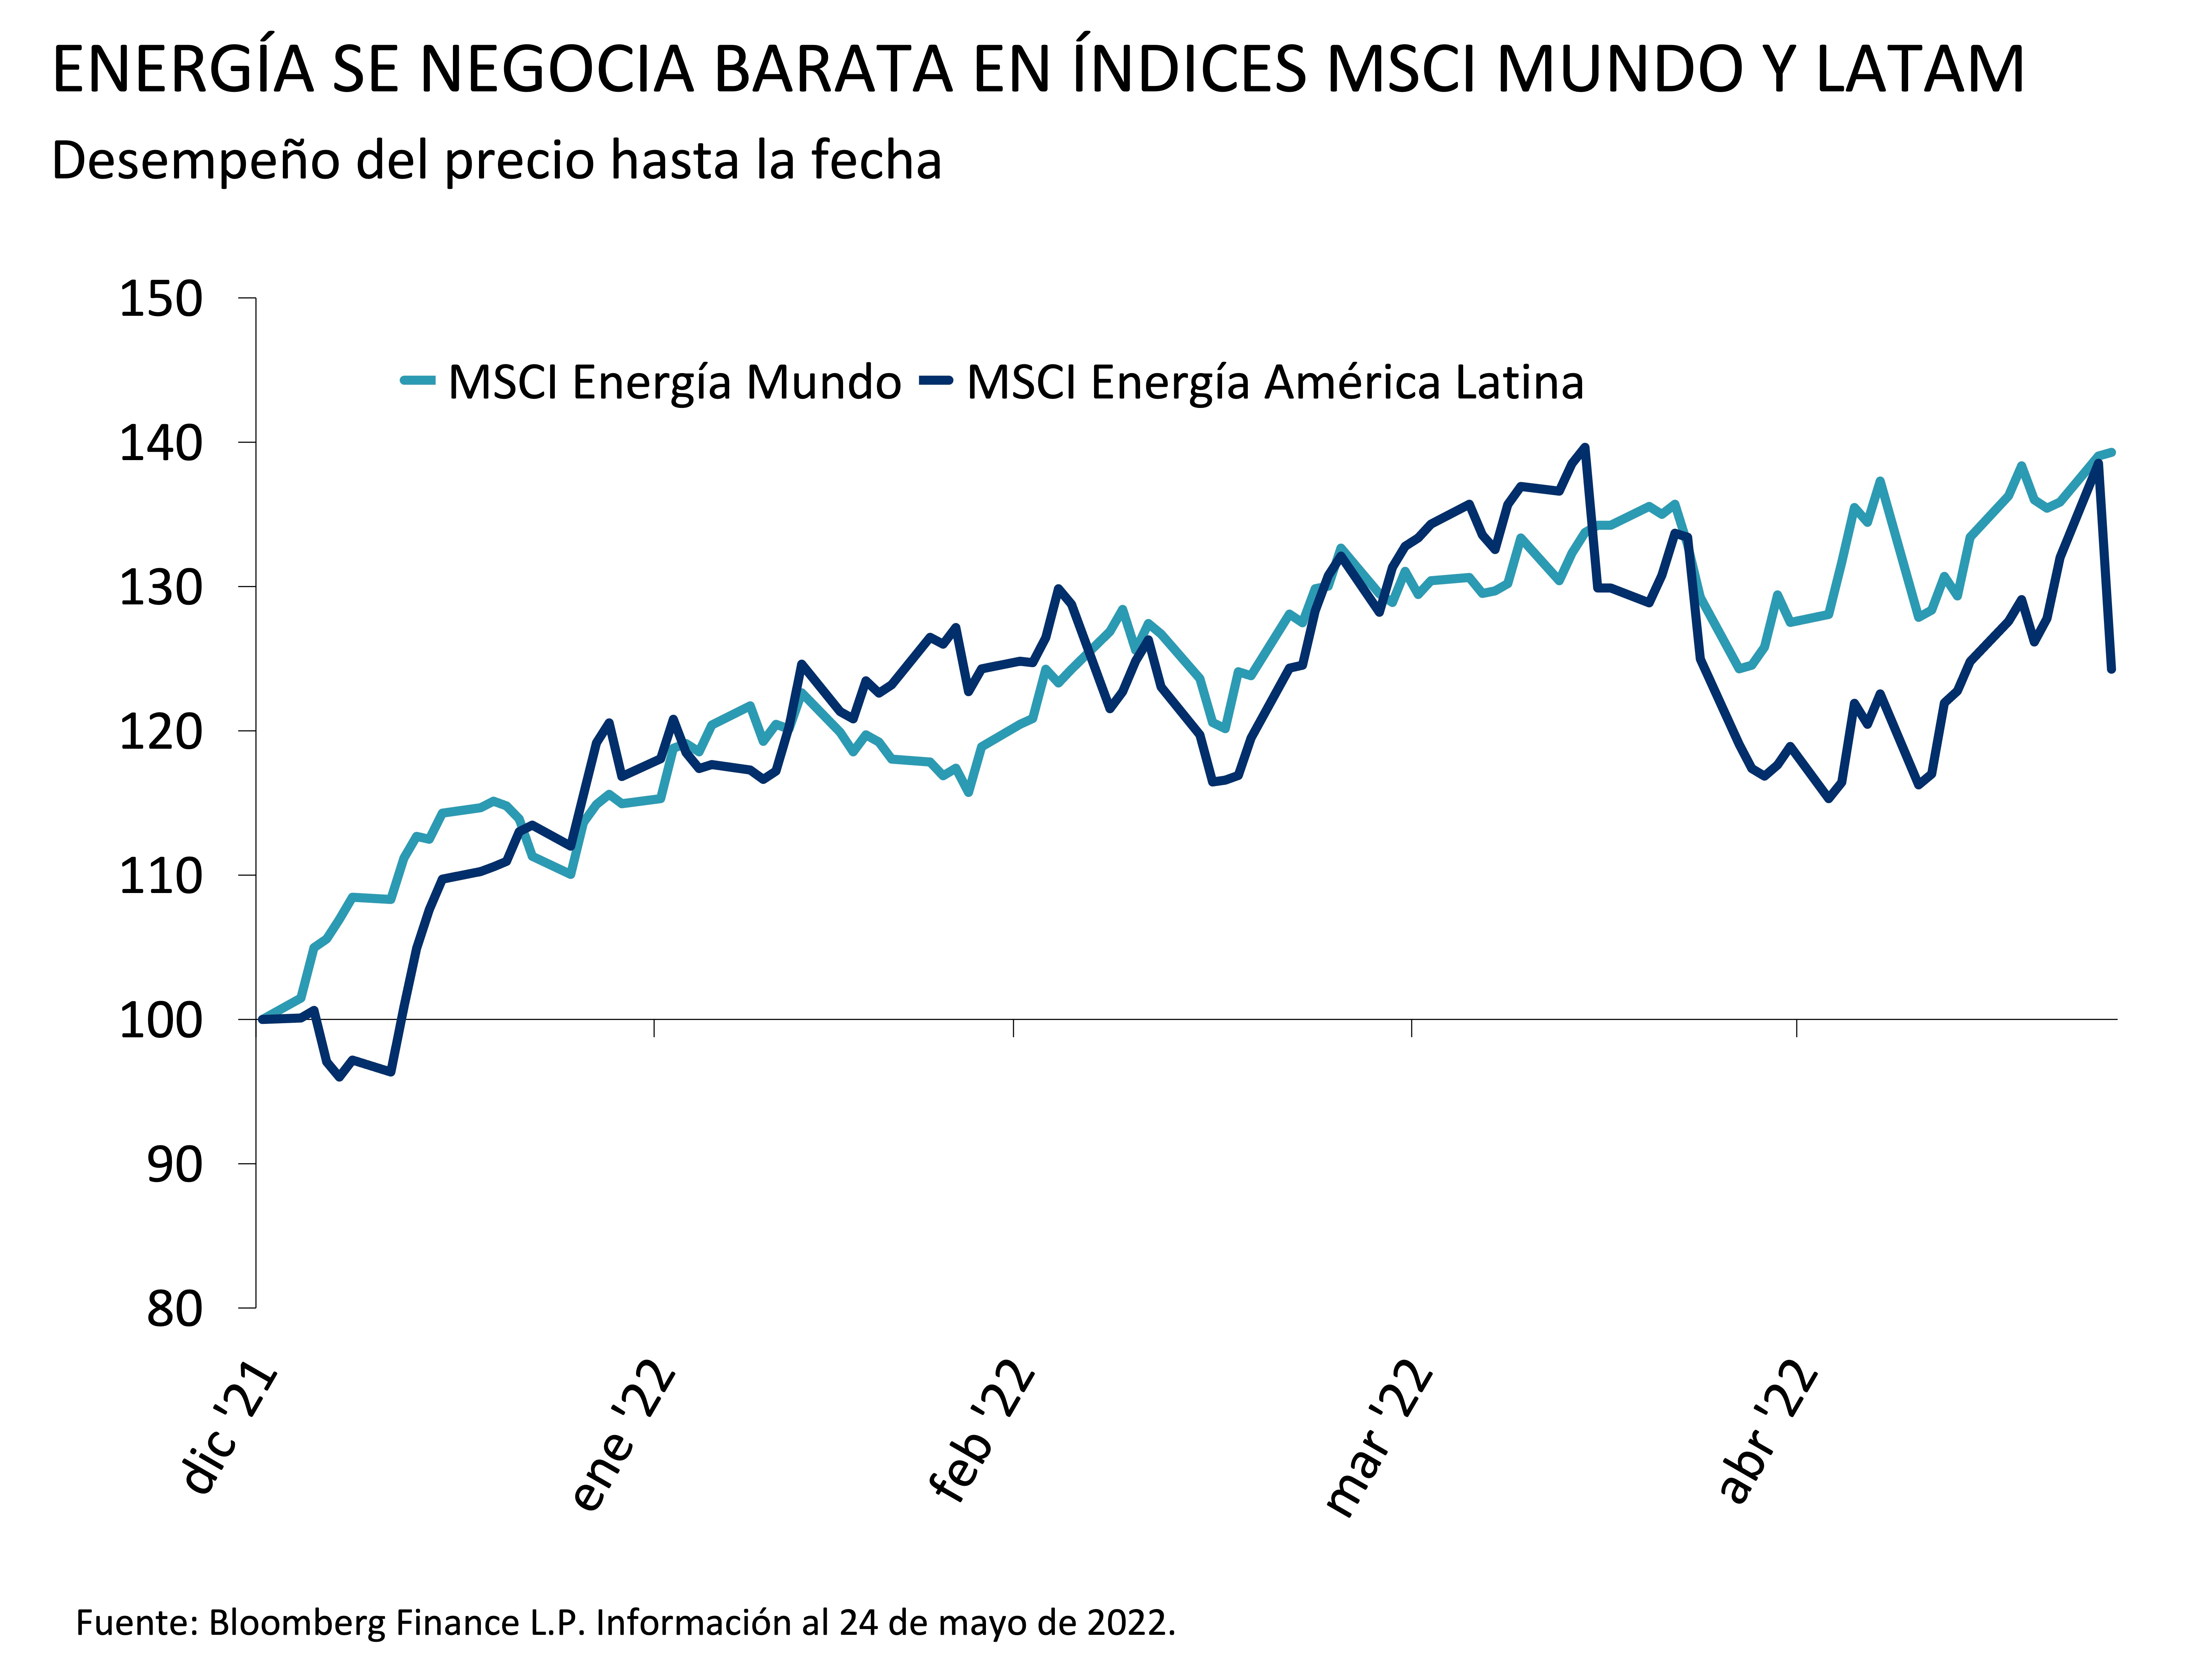  Estos gráficos muestran los índices MSCI World Energy y MSCI LatAm Energy, indexados hasta el 31 de diciembre de 2021, desde el 31 de diciembre de 2021 hasta el 24 de mayo de 2022. El primer dato se situó en 100 para ambos índices, y rápidamente aumentó hasta 129,9 para el MSCI LatAm Energy y 128,4 para el MSCI World Energy, a principios de marzo de 2022.